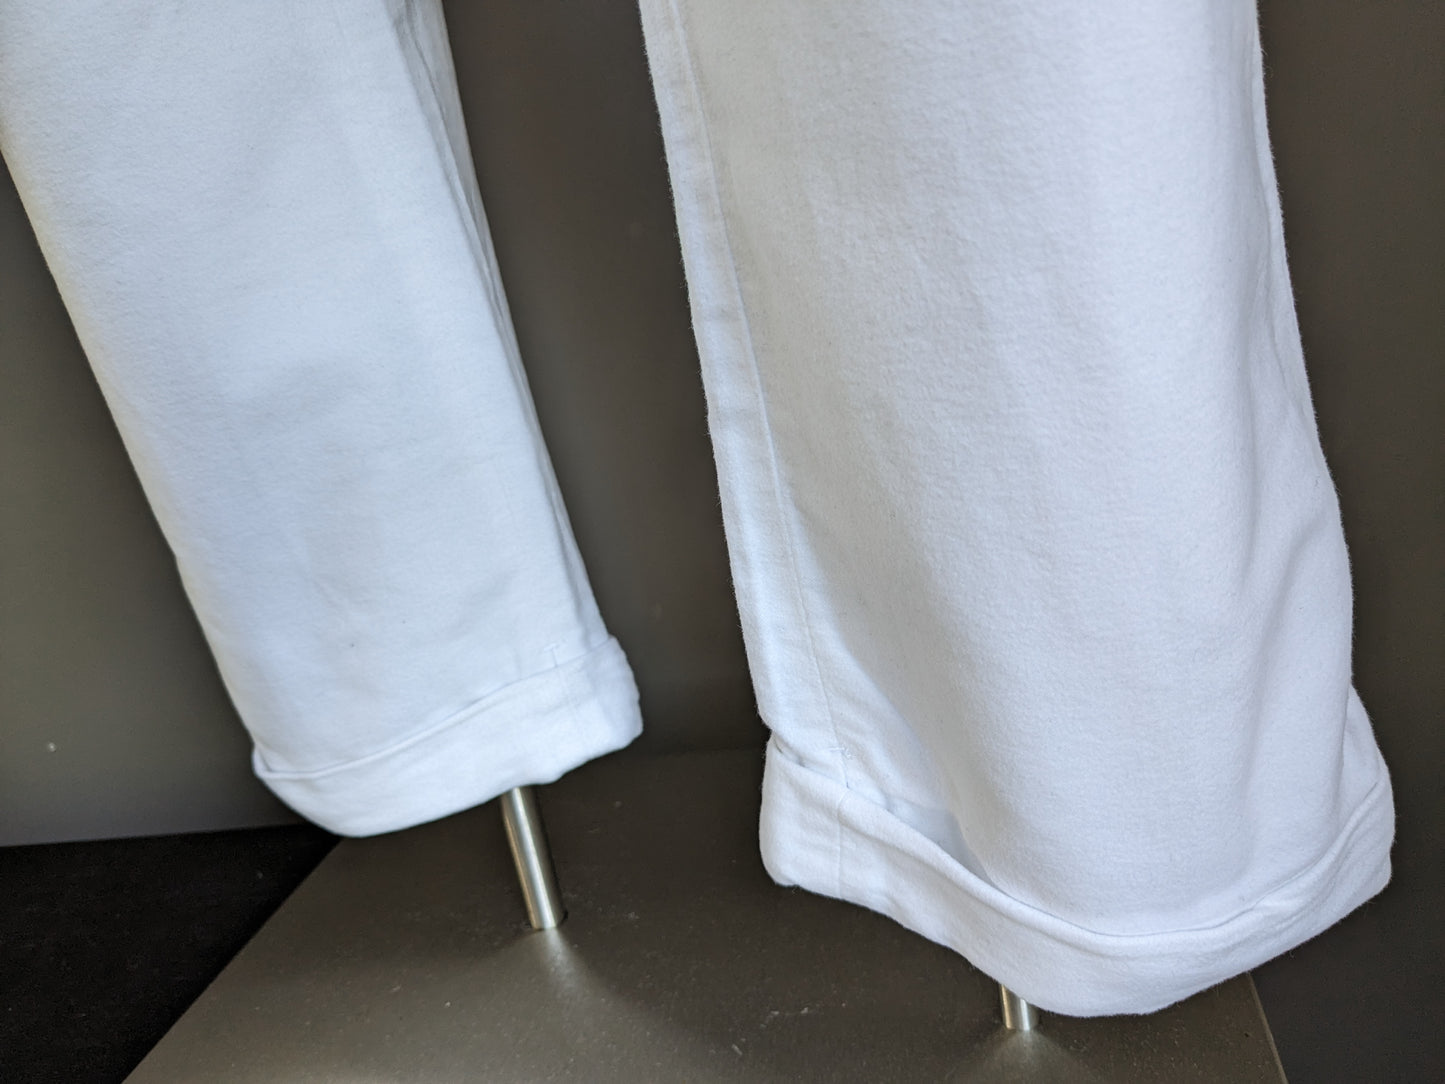 Pantalón con vuelta y aplicaciones de tirantes de Suit Supply. De color blanco. Talla 27 (54/L)